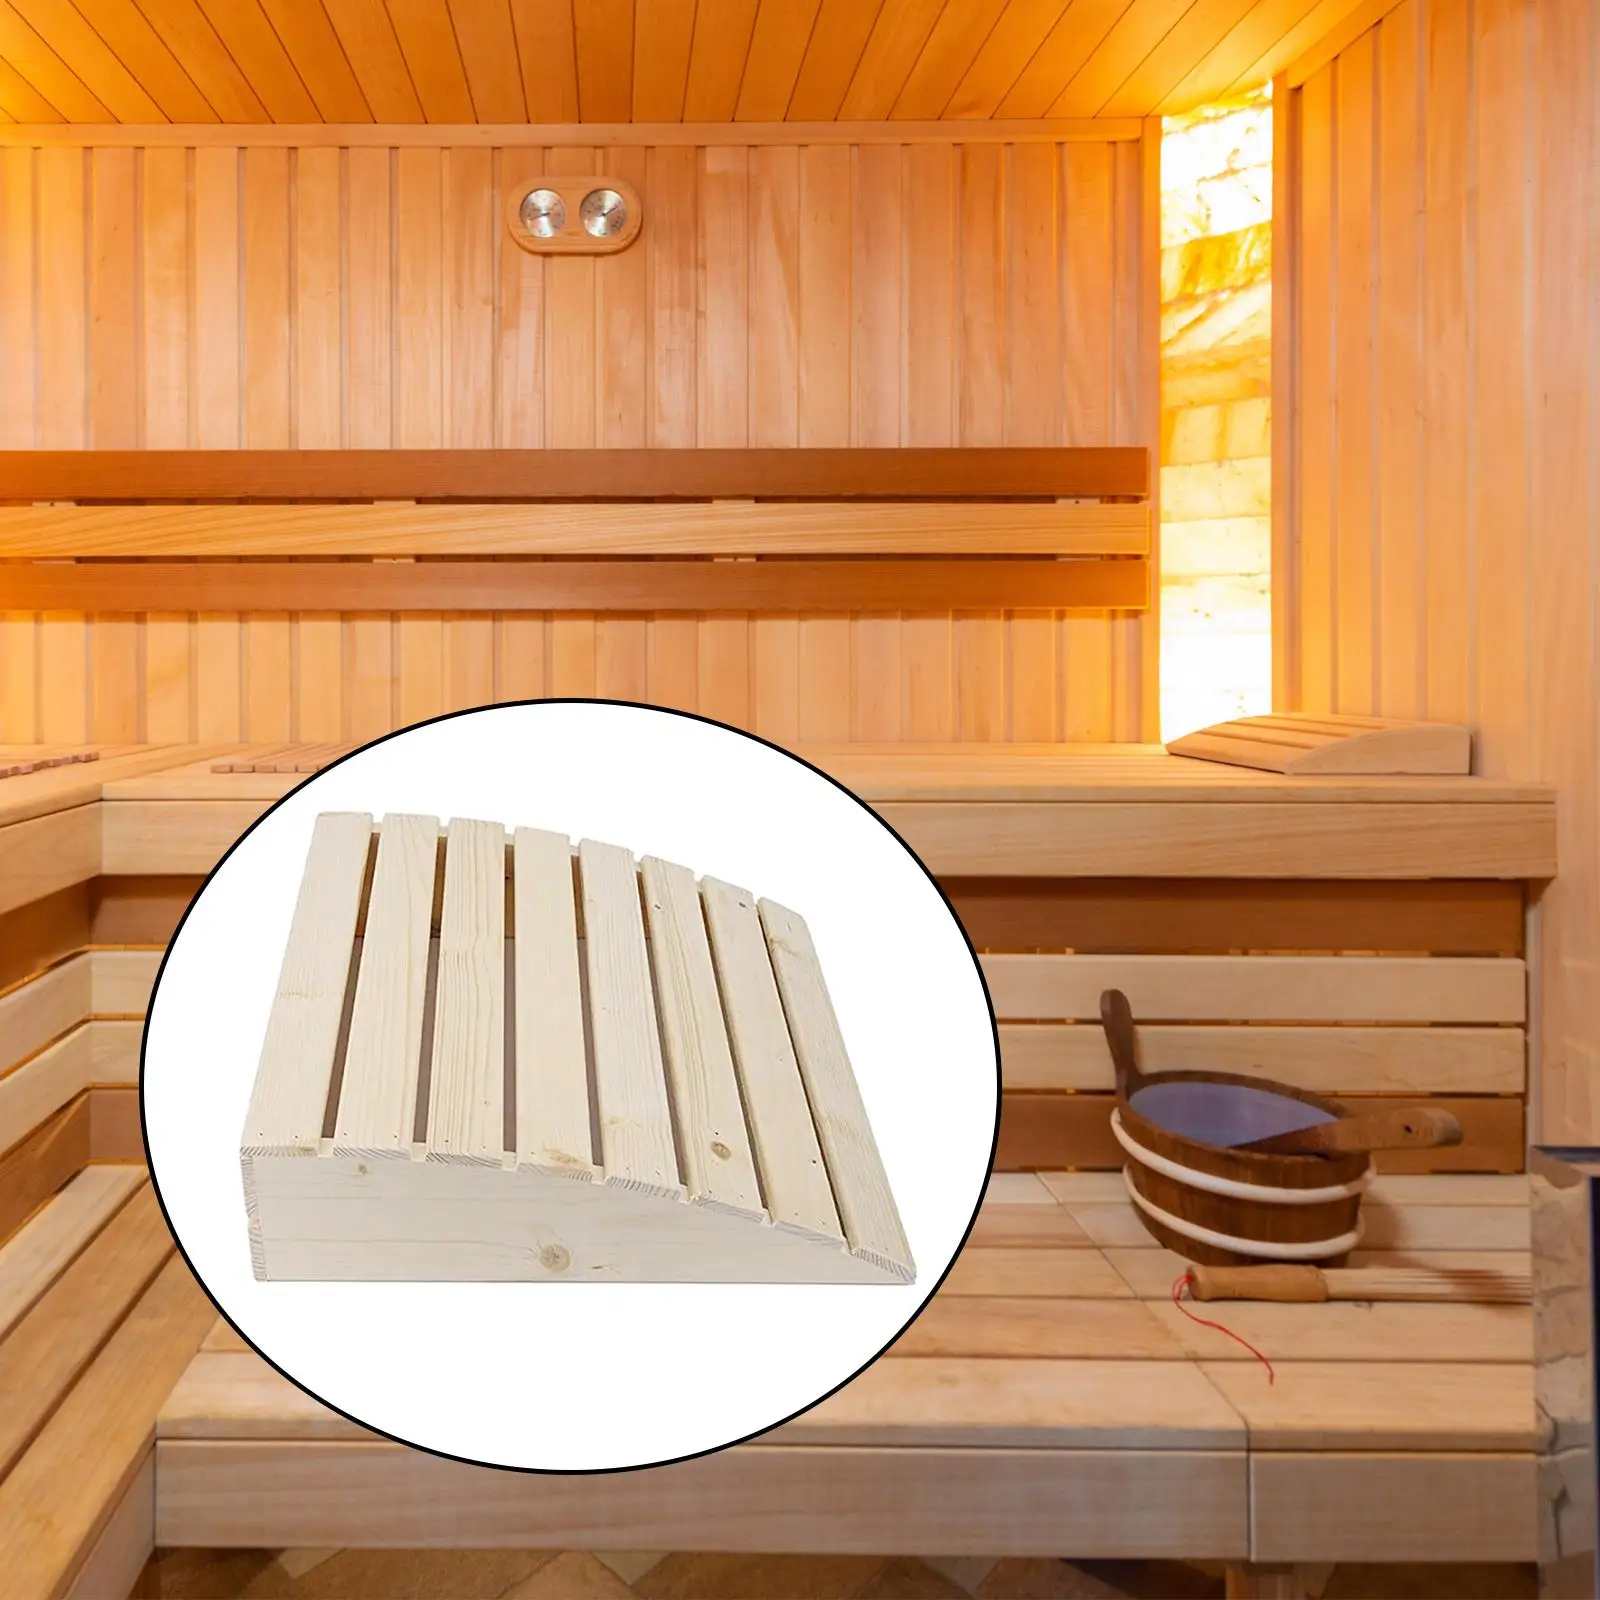 Wooden Sauna Headrest Head Support Sauna Supplies Accessories Practical Wooden Neck Pillow for Sofa Sauna Room Bathroom Bedroom